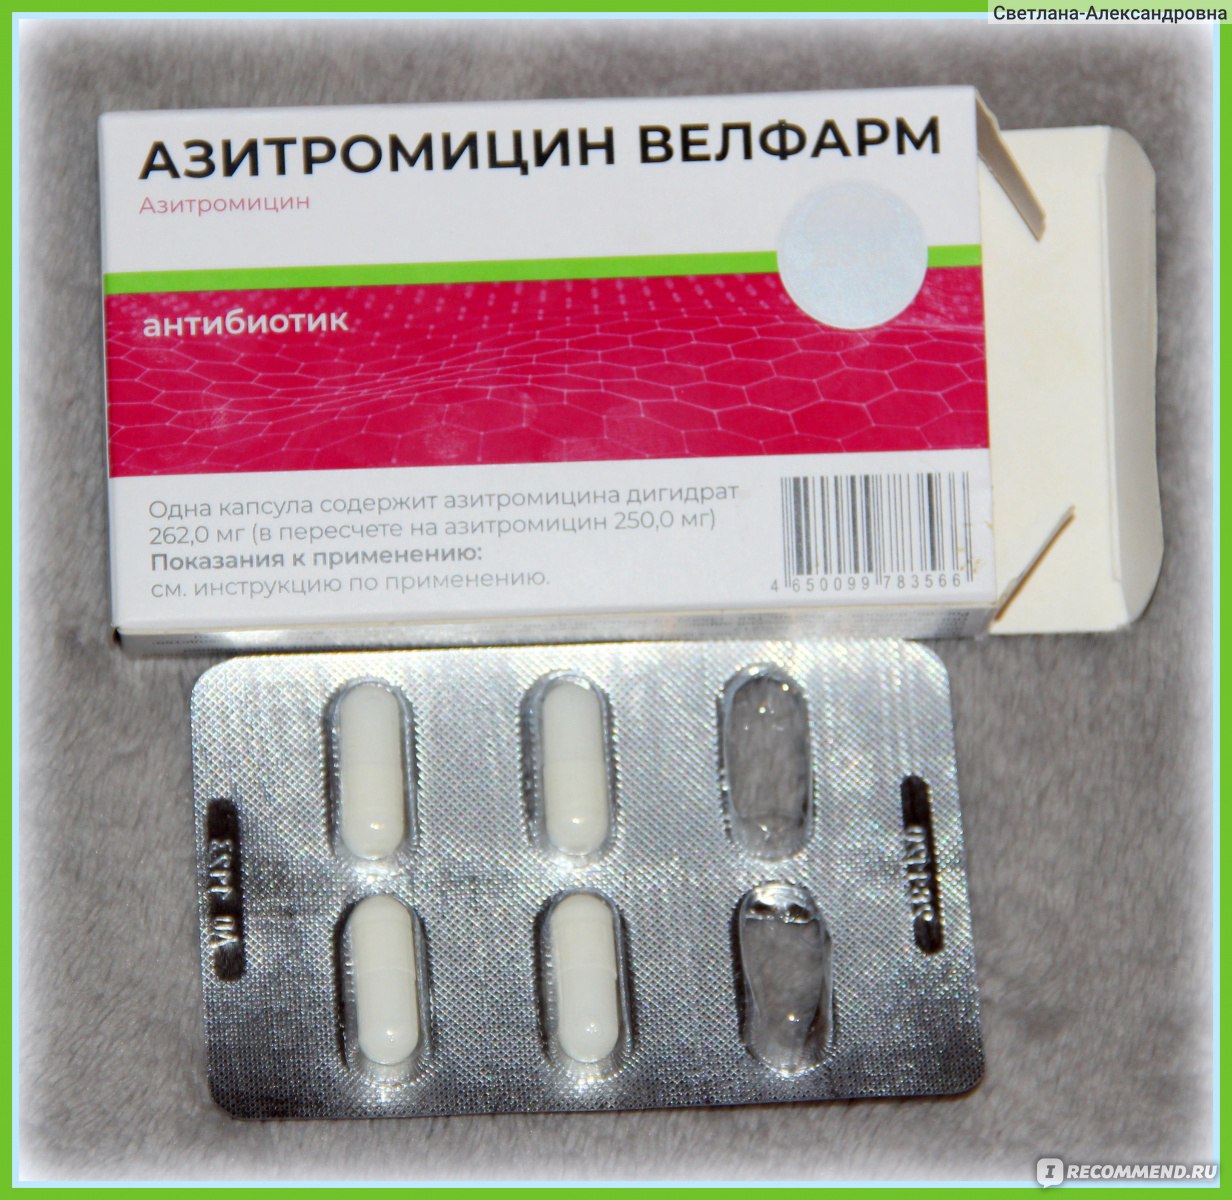 Антибиотик Велфарм Азитромицин 250мг - «Прием антибиотика по .